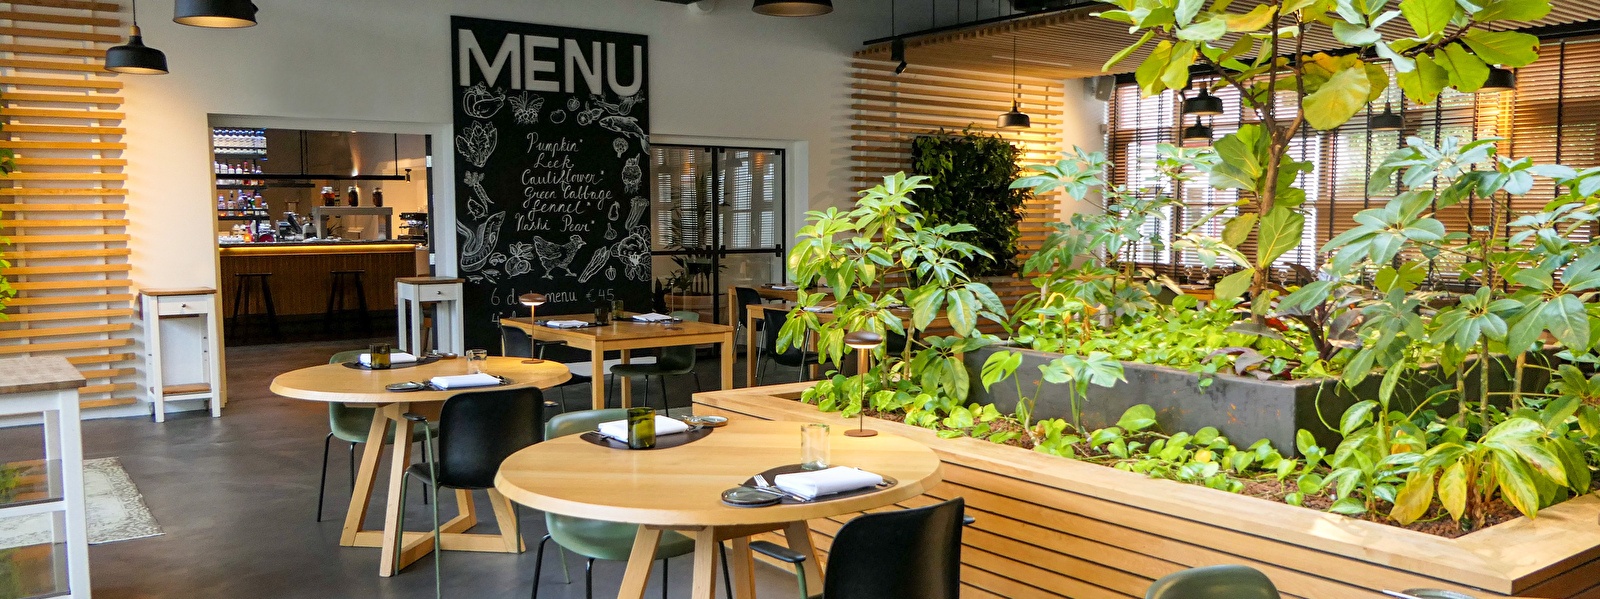 Restaurant Wannee Leeuwarden met ecologische kruidentuin